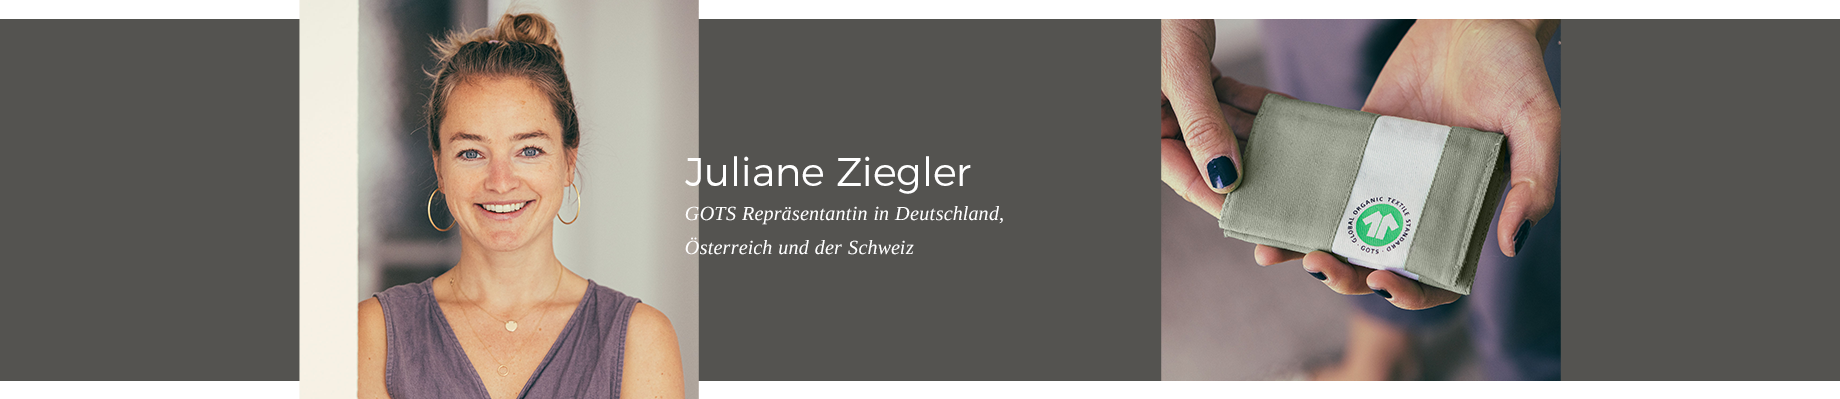 Juliane Ziegler - GOTS-Repräsentantin in Deutschland, Österreich und der Schweiz.